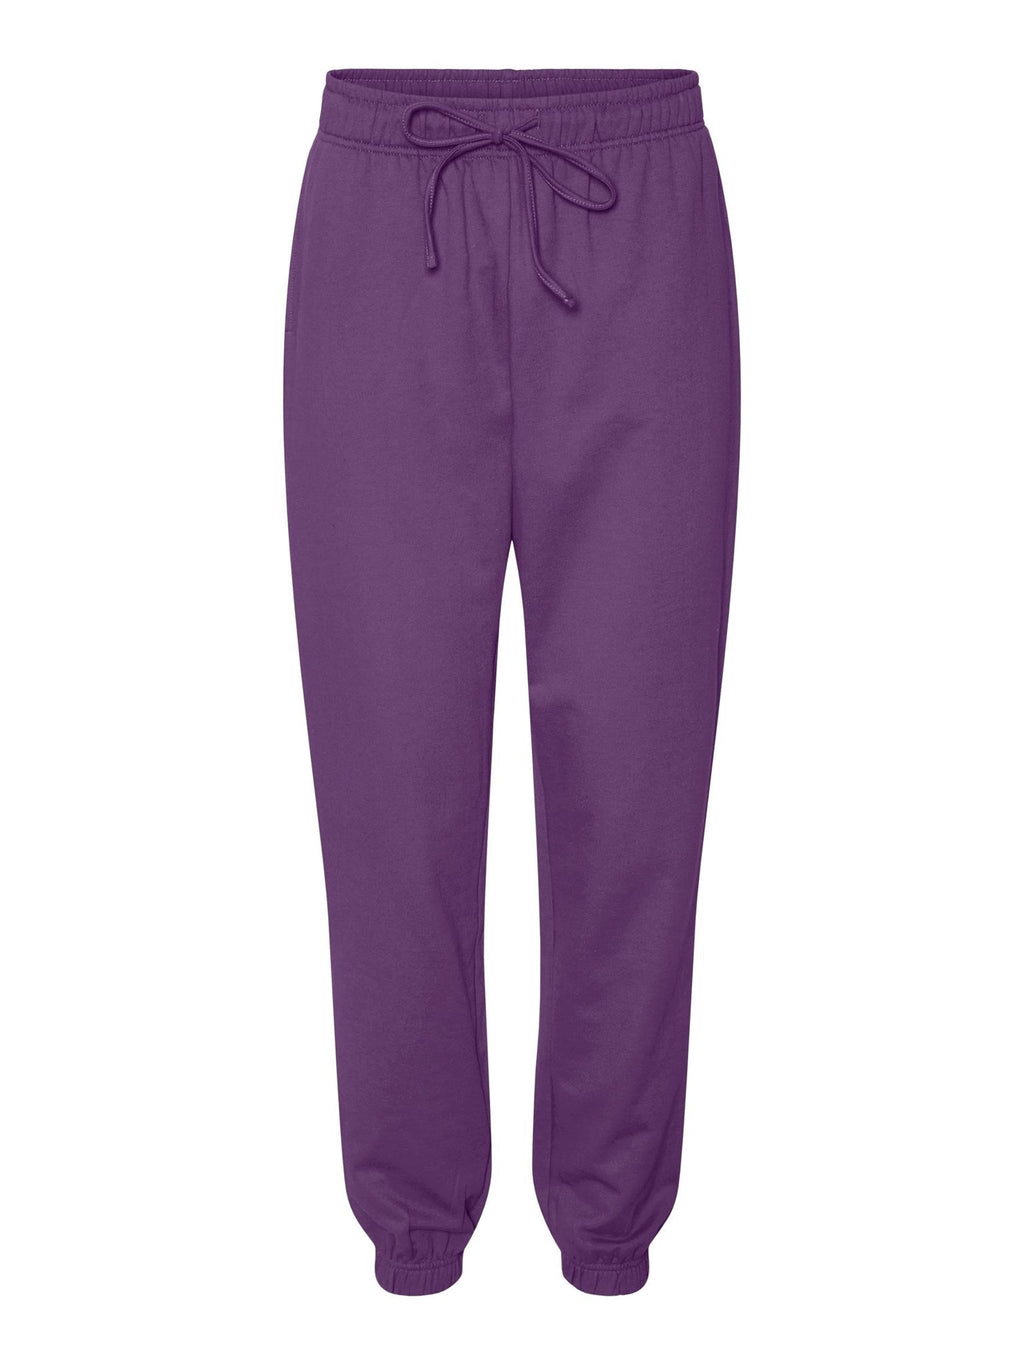 Pantalon de survêtement de Chicago - violet